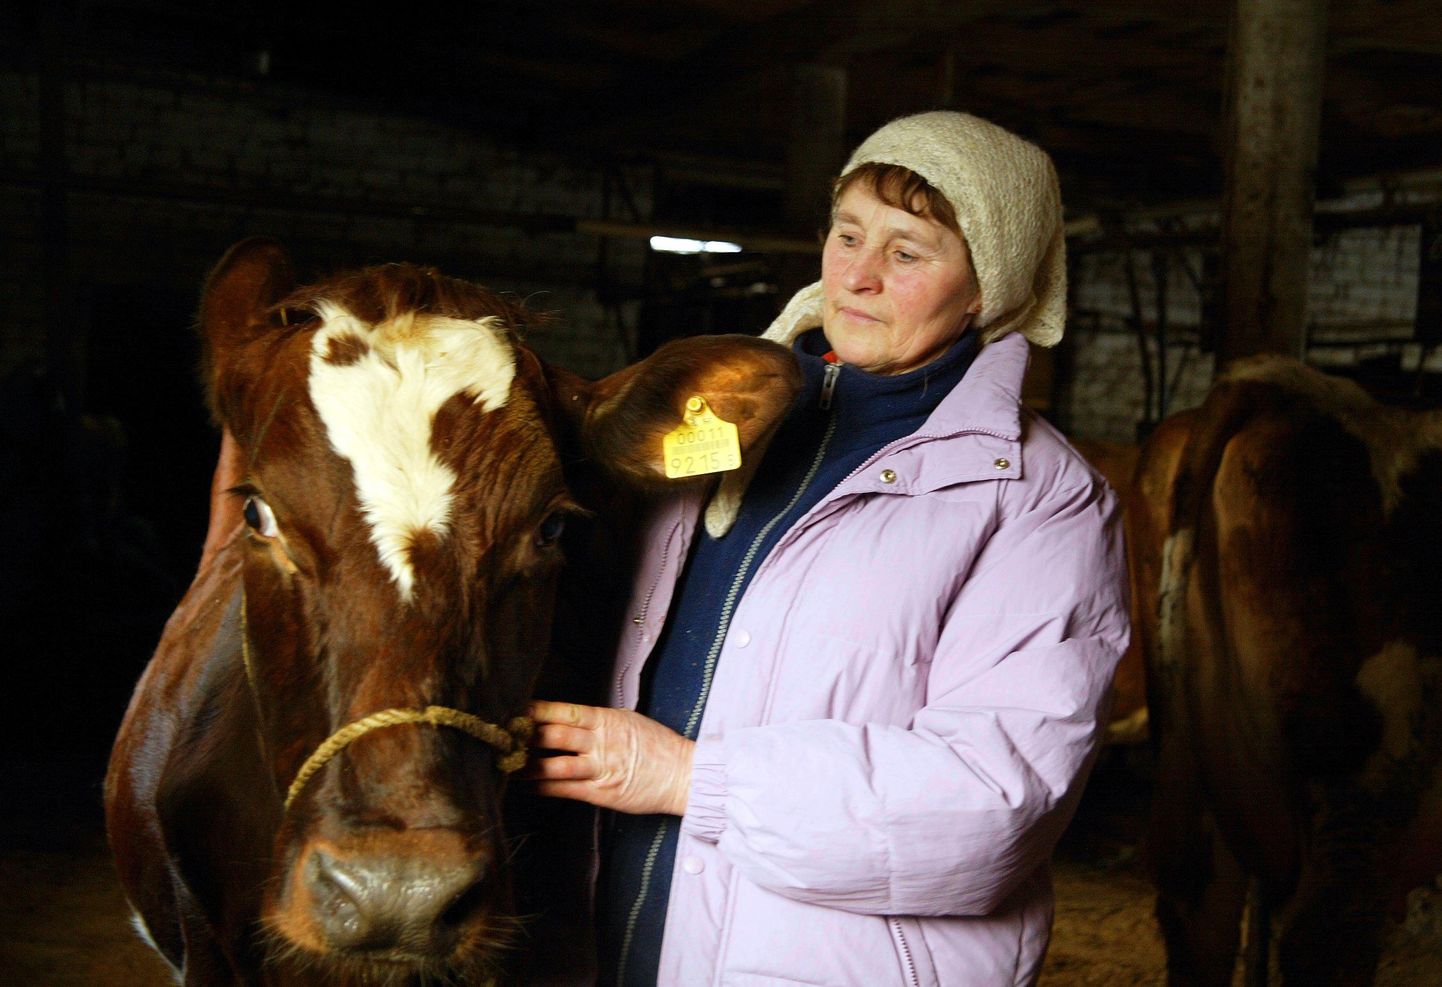 Ligi 30 aastat Viljandimaal piimakarja aretamisega tegelenud Lea Puur on olnud üks neist, kes on pidanud kriisi tõttu põllumajanduses oma karjast loobuma.